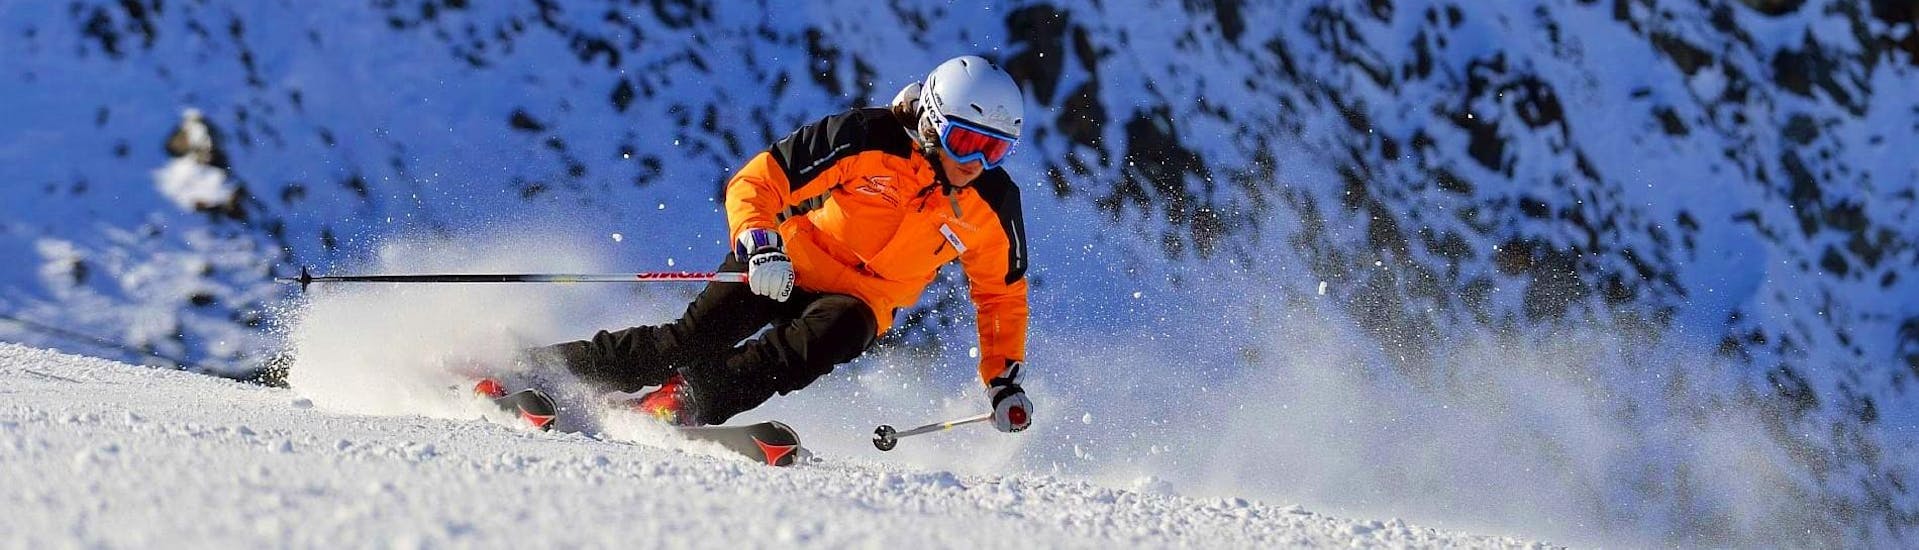 Ein Skifahrer flitzt die Pisten hinunter und lässt dabei den Schnee spritzen, während er optimal von der Skischule Ingrid Salvenmoser betreut wird.